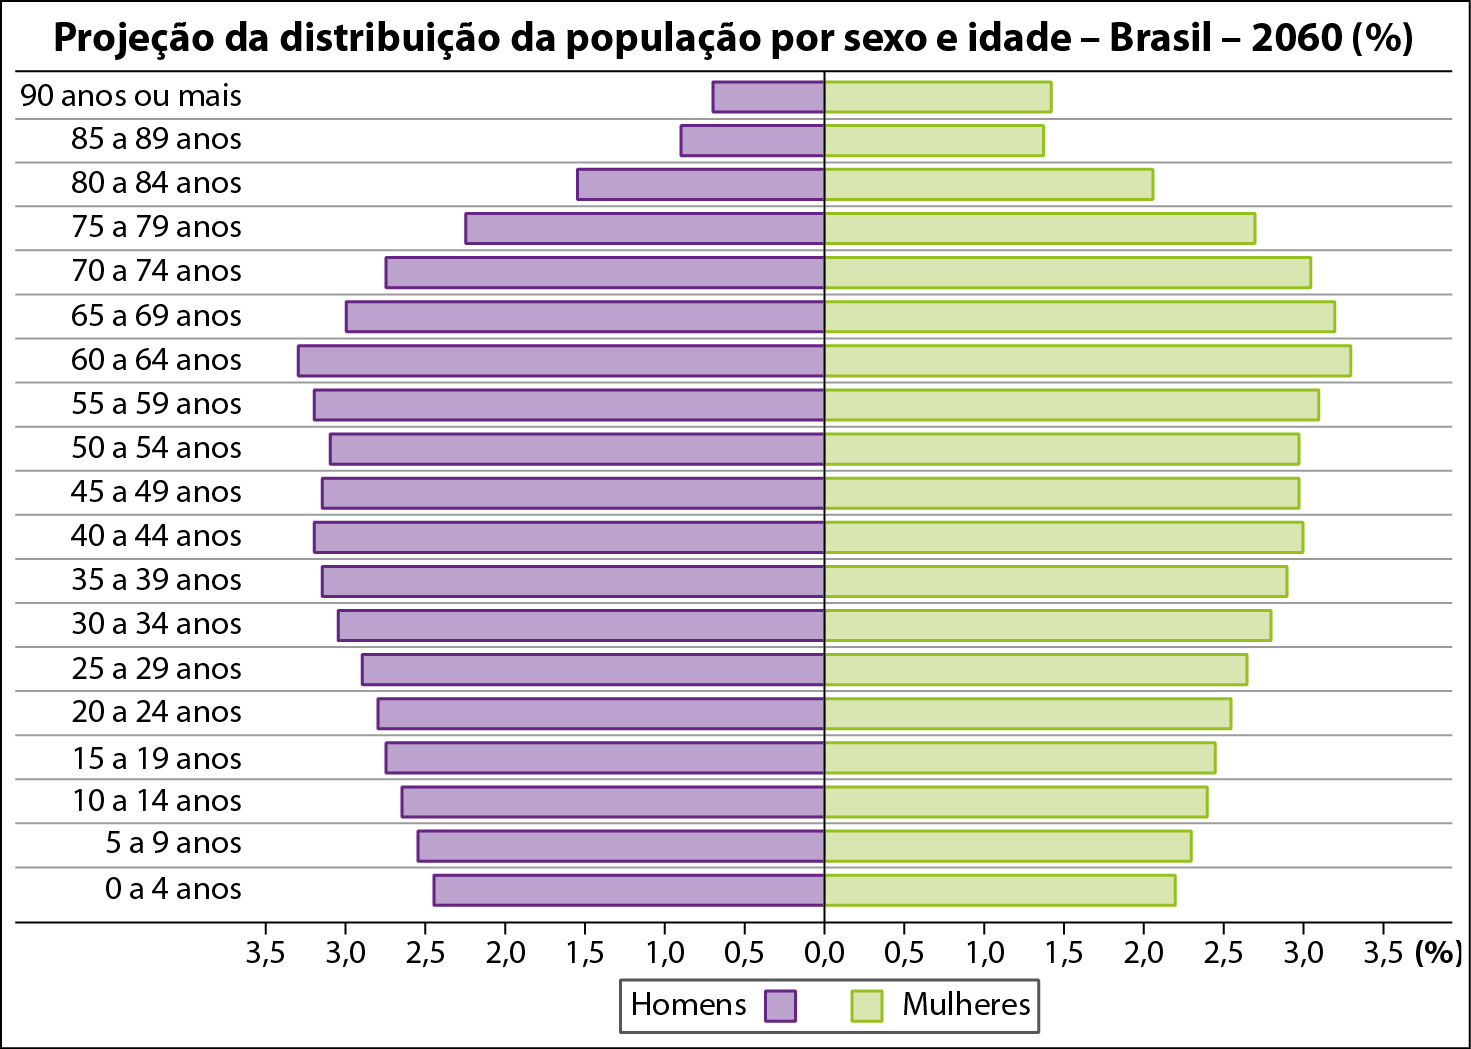 Gráfico. Projeção da distribuição da população por sexo e idade – Brasil – 2060 (%). No eixo x, porcentagem. À esquerda, homens. À direita, mulheres. De baixo para cima, os dados são: De 0 a 4. Homens:  2,5. Mulheres:  2,3. De 5 a 9. Homens. 2,5. Mulheres: 2,4. De 10 a 14. Homens:  2,5. Mulheres:  2,5. De 15 a 19. Homens:  2,6. Mulheres:  2,5. De 20 a 24. Homens:  2,6. Mulheres:  4,9 De 25 a 29. Homens:  2,6. Mulheres:  2,7. De 30 a 34. Homens:  2,9. Mulheres:  2,9. De 35 a 39. Homens:  3,0. Mulheres:  3,0. De 40 a 44. Homens:  3,1. Mulheres:  3,0. De 45 a 49. Homens:  2,9. Mulheres: 3,0. De 50 a 54. Homens:  2,8. Mulheres:  3,0. De 55 a 59. Homens:  3,0. Mulheres:  3,0. De 60 a 64. Homens:  3,0. Mulheres:  3,1. De 65 a 69. Homens: 2,8. Mulheres:  3,0. De 70 a 74. Homens:  2,5. Mulheres:  2,5. De 75 a 79. Homens:  2,3. Mulheres:  2,3. De 80 a 84. Homens:  1,5. Mulheres: 2,0. De 85 a 89. Homens:  1,0. Mulheres:  1,5. De 90 ou mais. Homens:  0,5. Mulheres: 1,5.